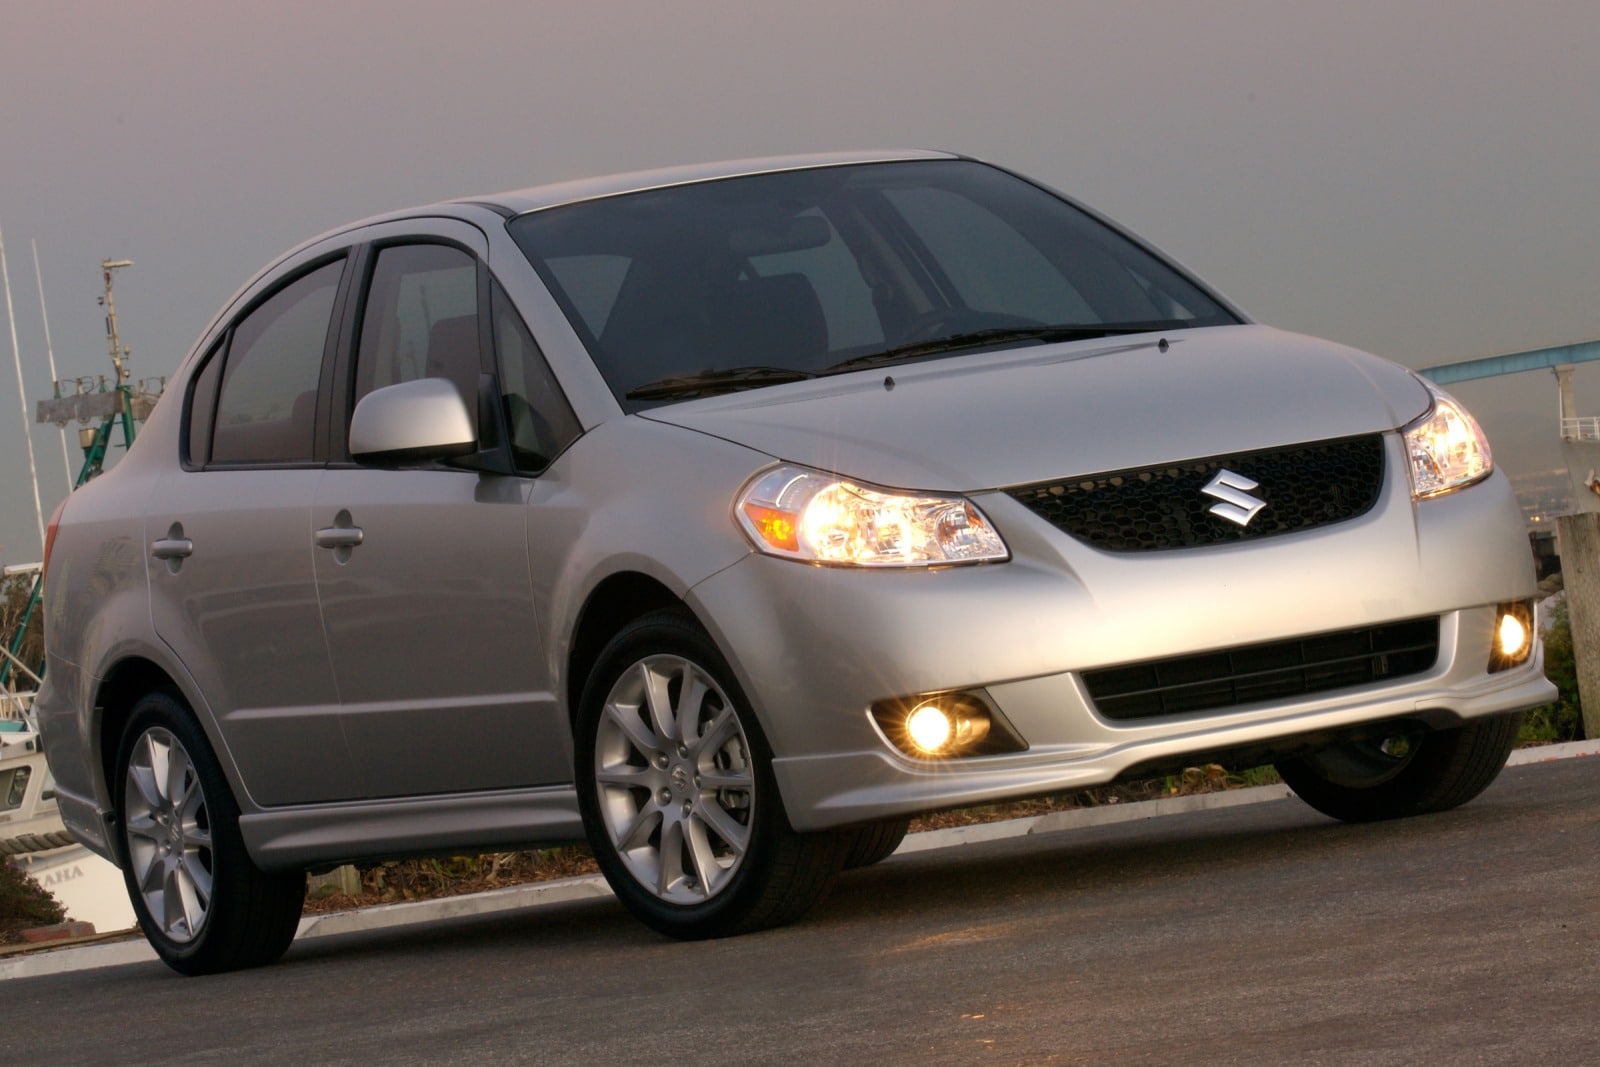 2010 Suzuki SX4 Review & Ratings | Edmunds